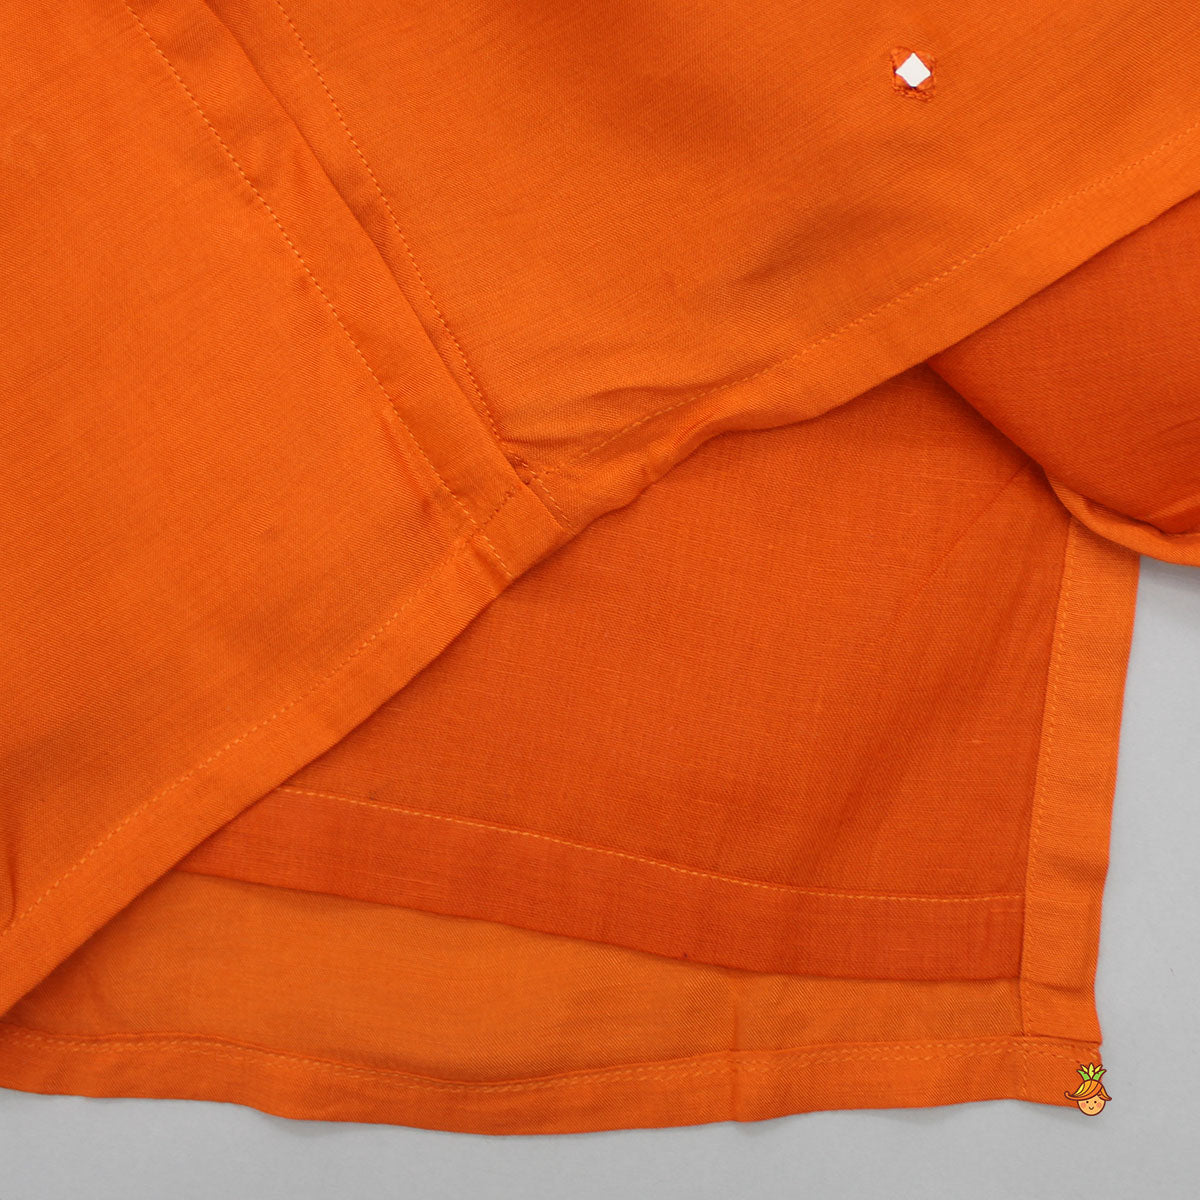 Orange Faux Mirror Work Kurta With Pyjama